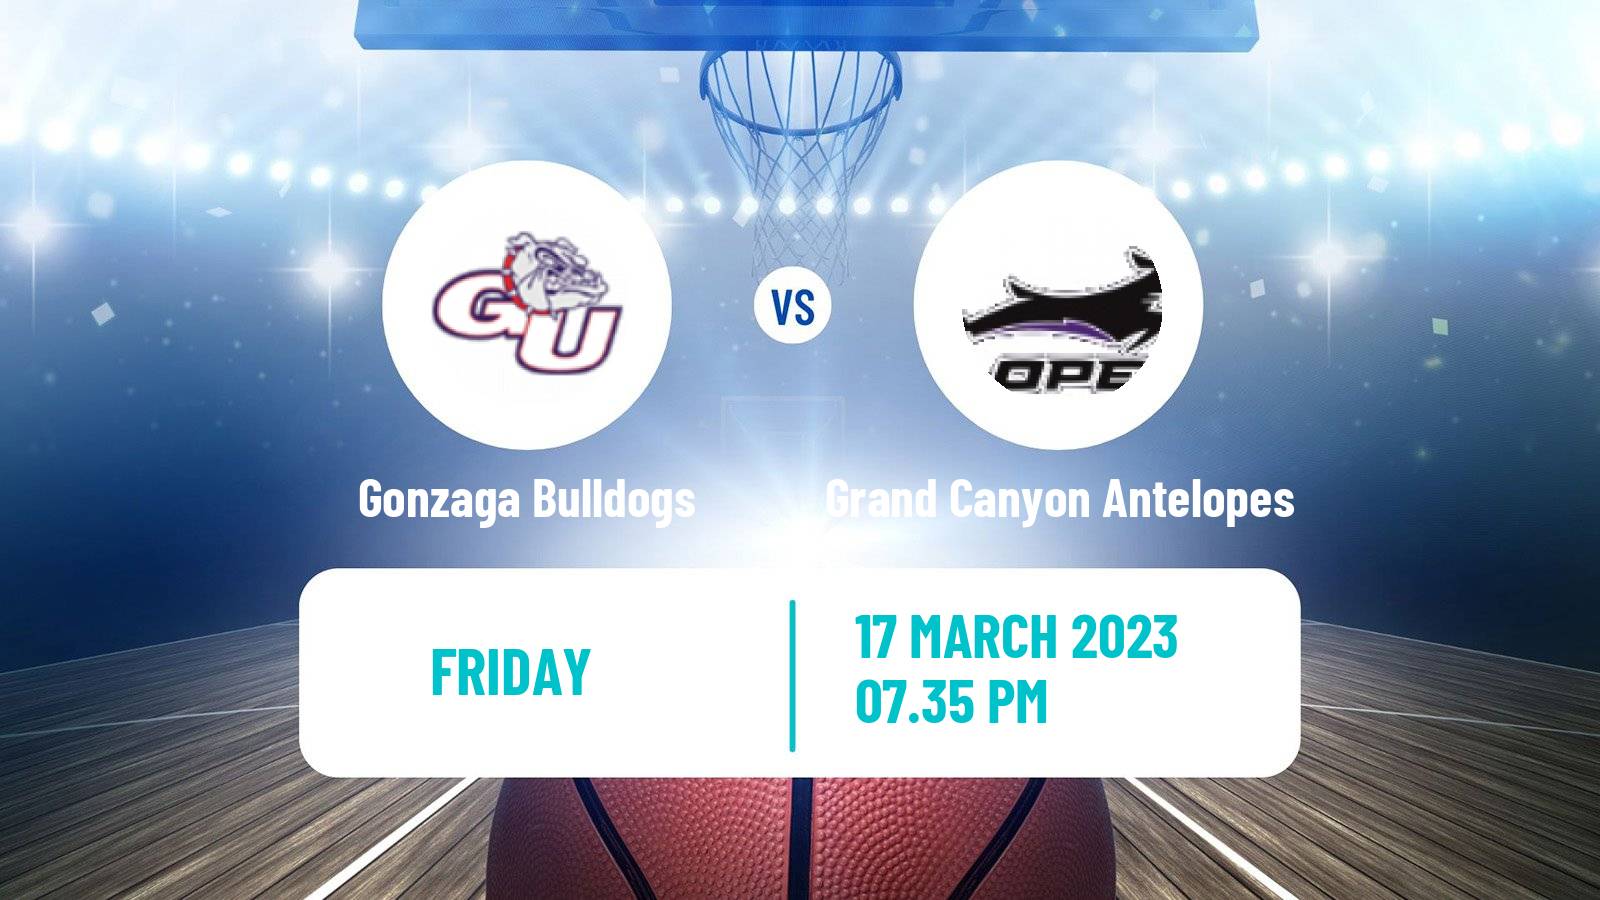 Basketball NCAA College Basketball Gonzaga Bulldogs - Grand Canyon Antelopes